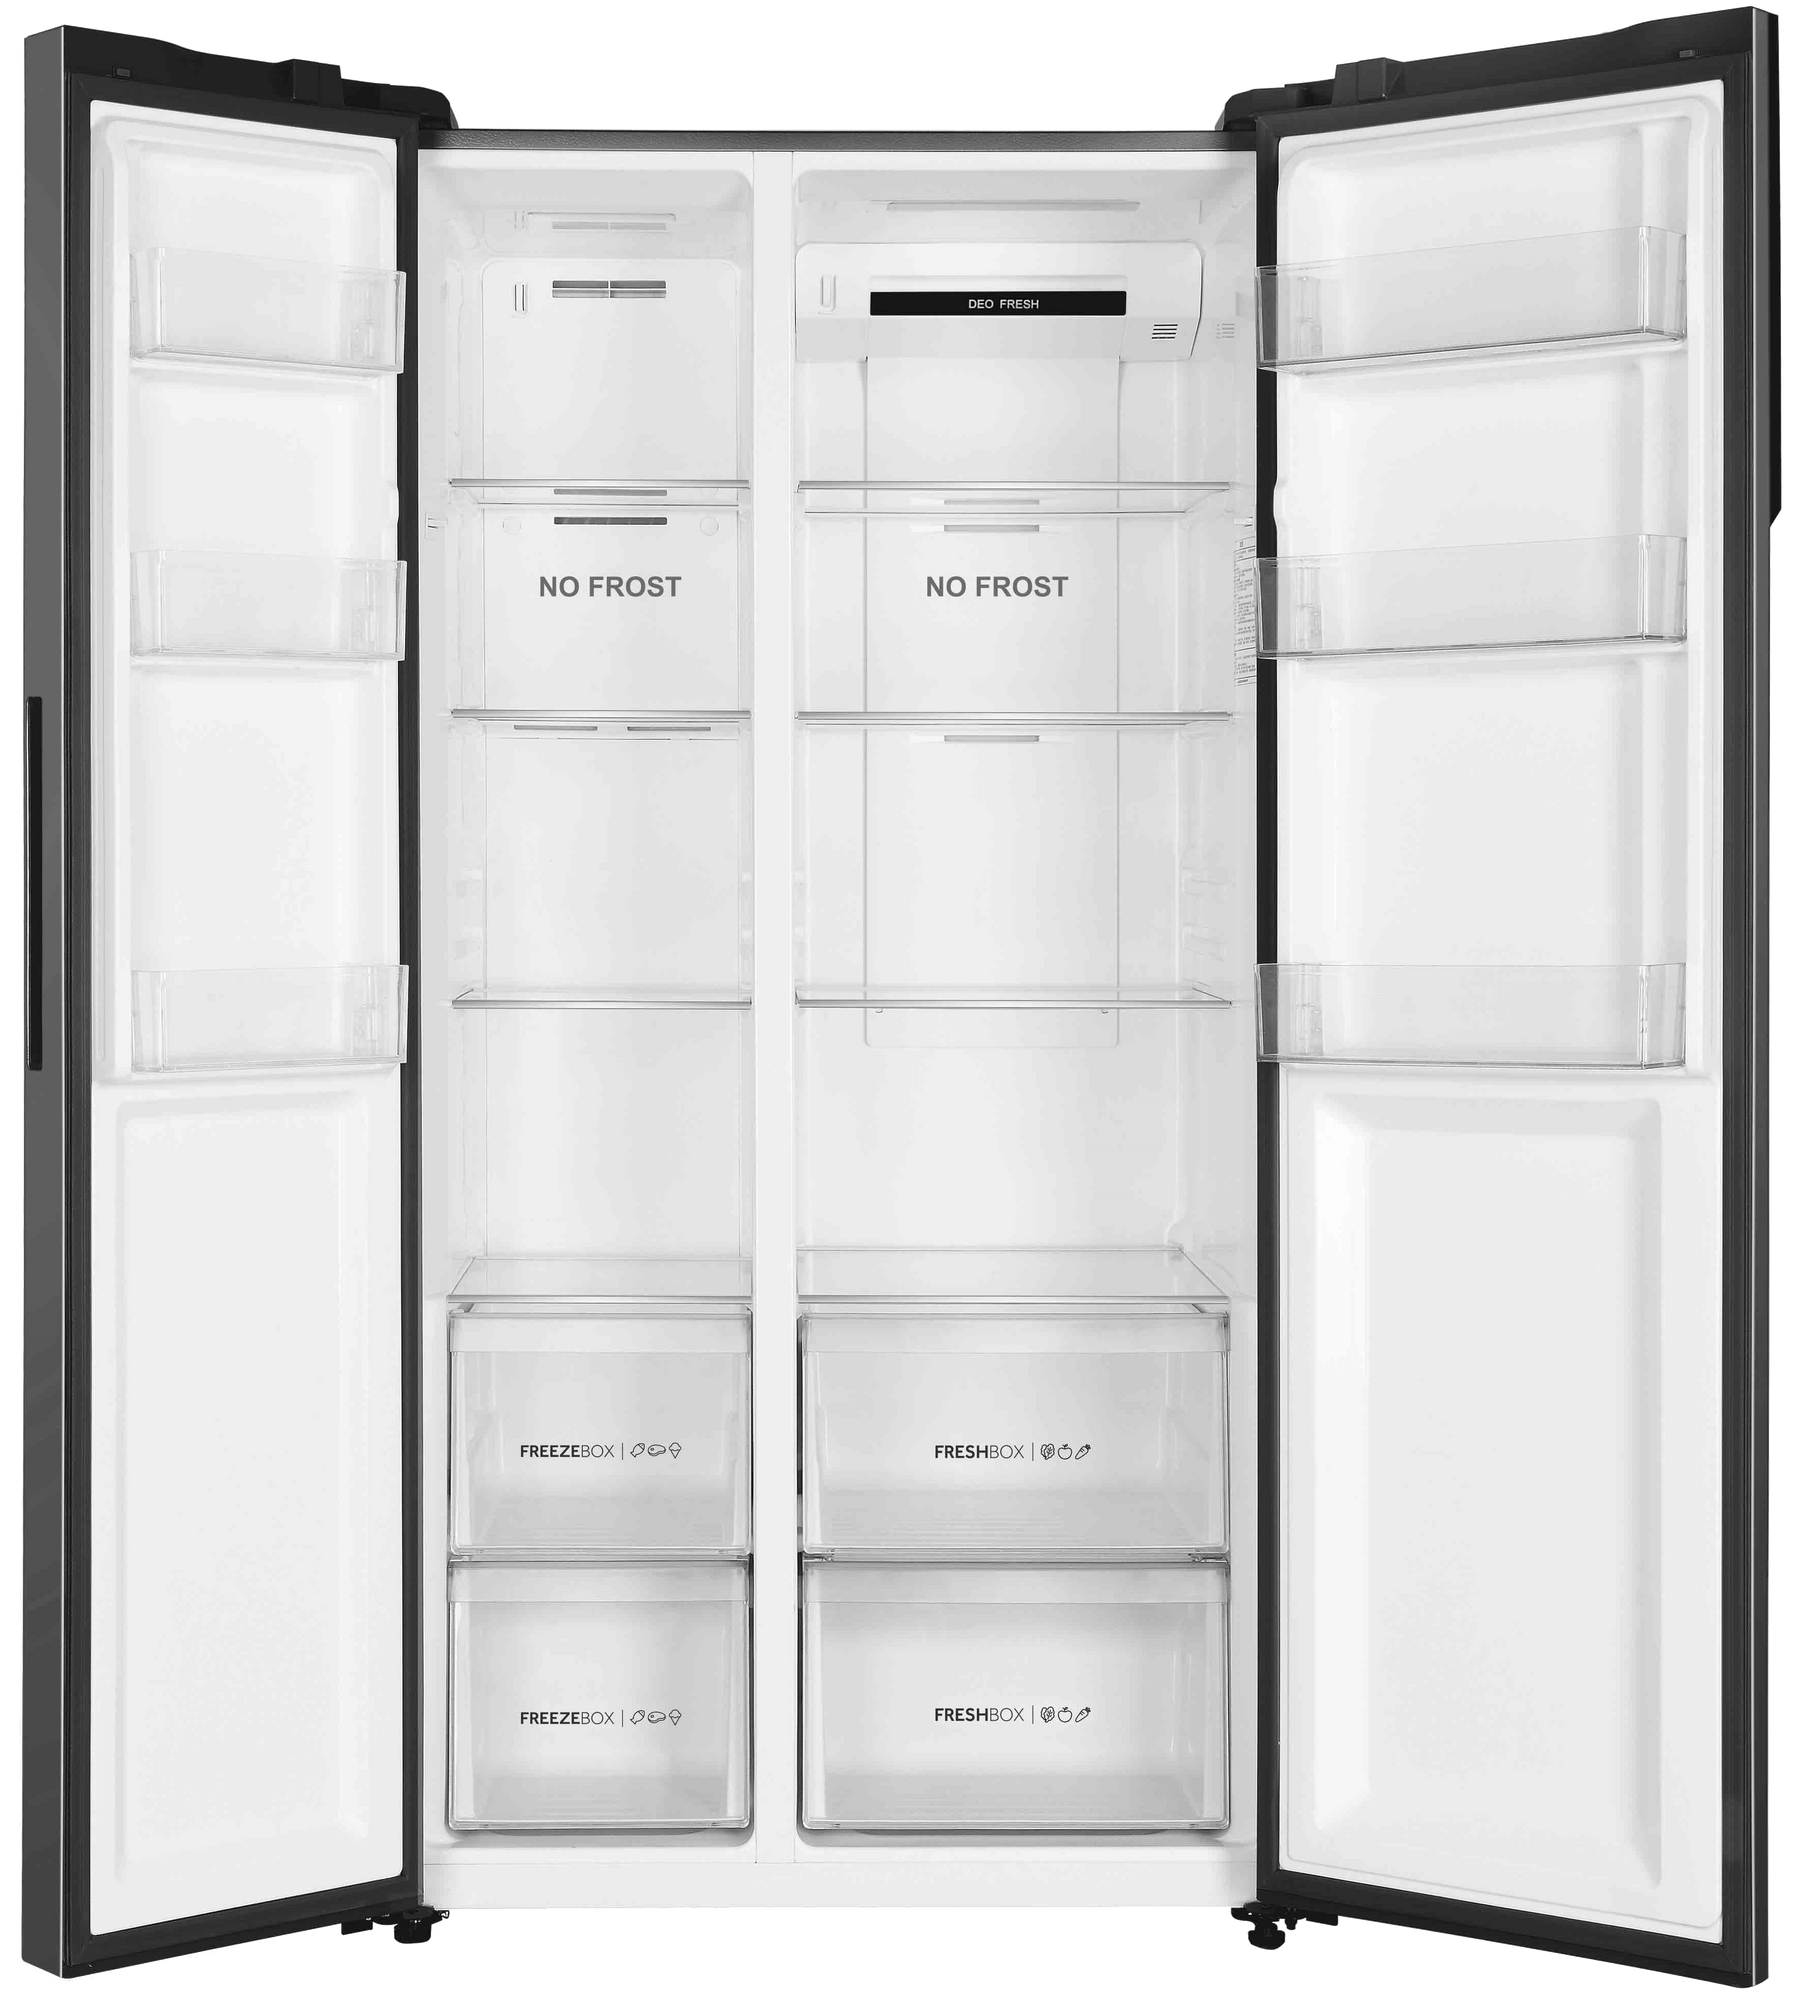 Холодильник Haier HRF-541DY7RU